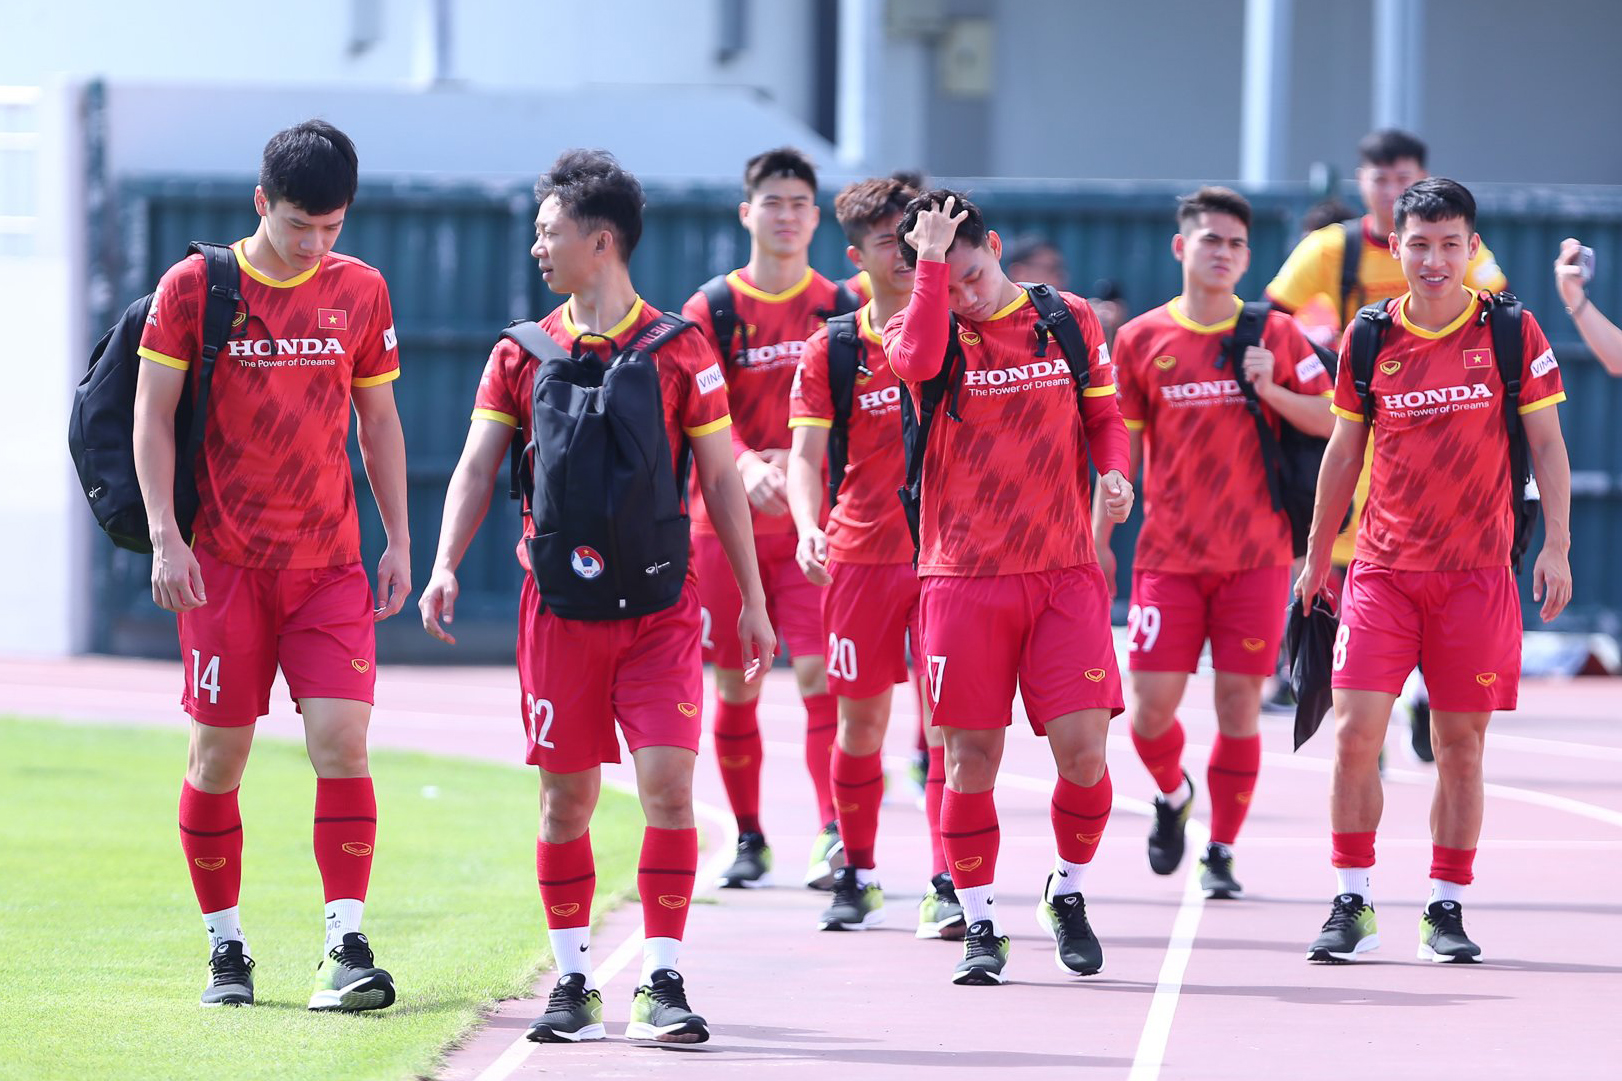 Sáng 5.12, đội tuyển Việt Nam tiếp tục có buổi tập tại sân vận động Bà Rịa. Đây là buổi tập nằm trong kế hoạch cho AFF Cup 2022 chuẩn bị diễn ra vào cuối năm nay.